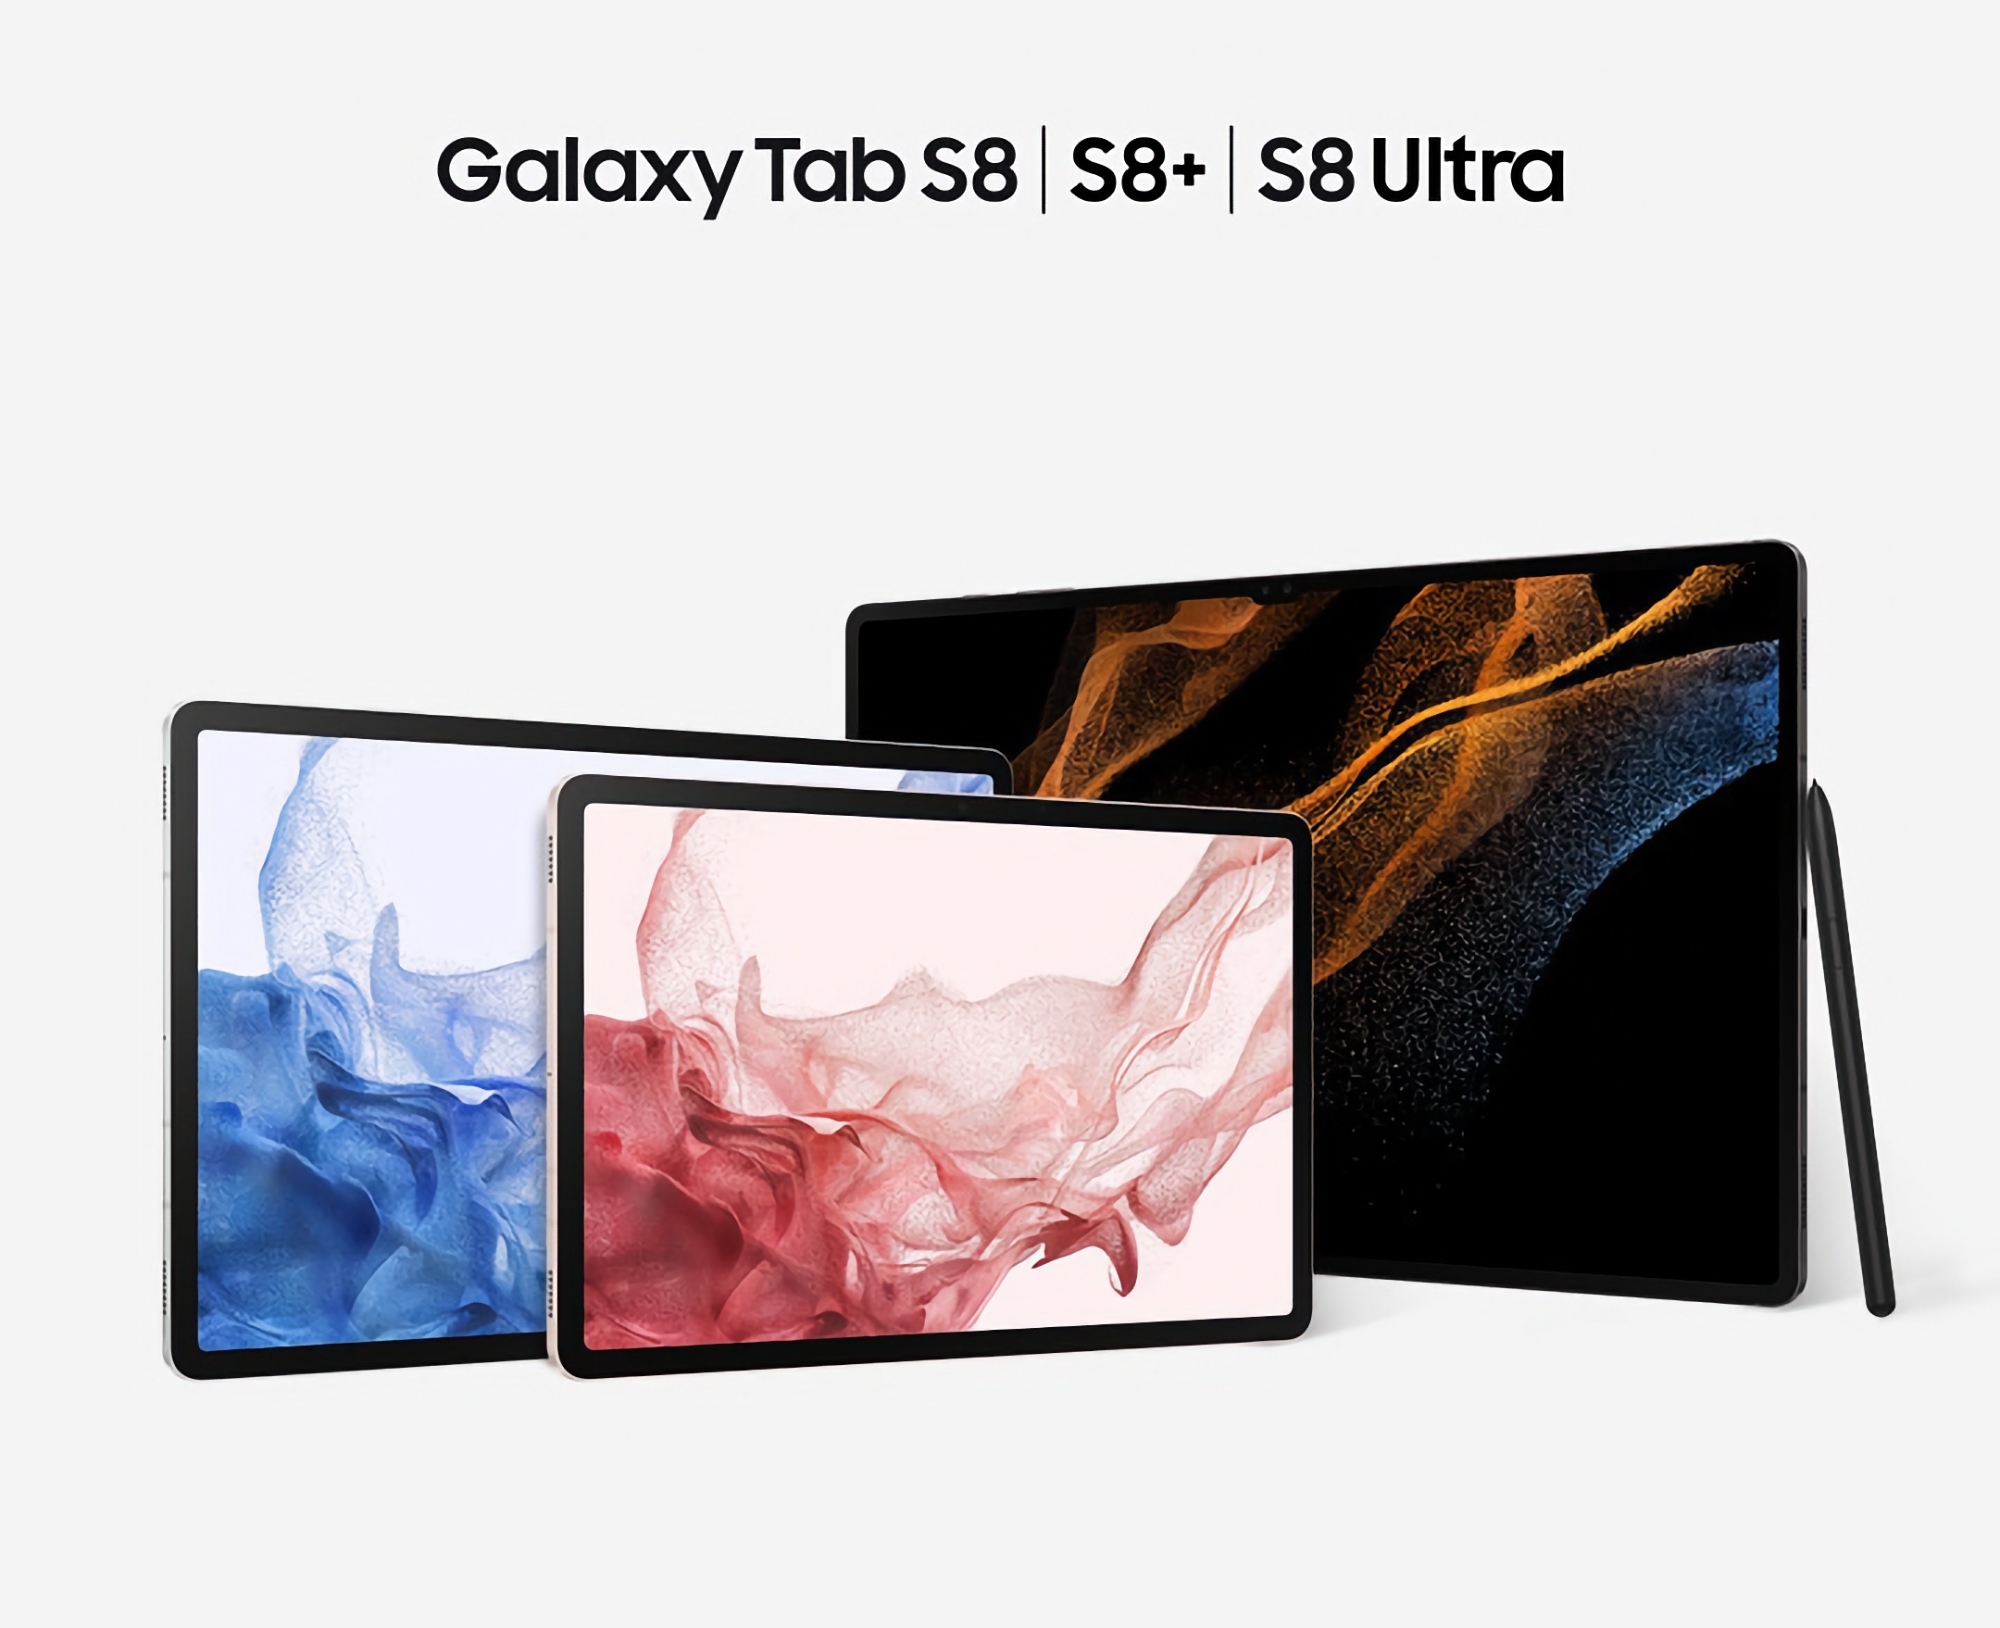 Samsung har släppt en uppdatering för Galaxy Tab S8, Galaxy Tab S8+ och Galaxy Tab S8 Ultra: det här är nytt